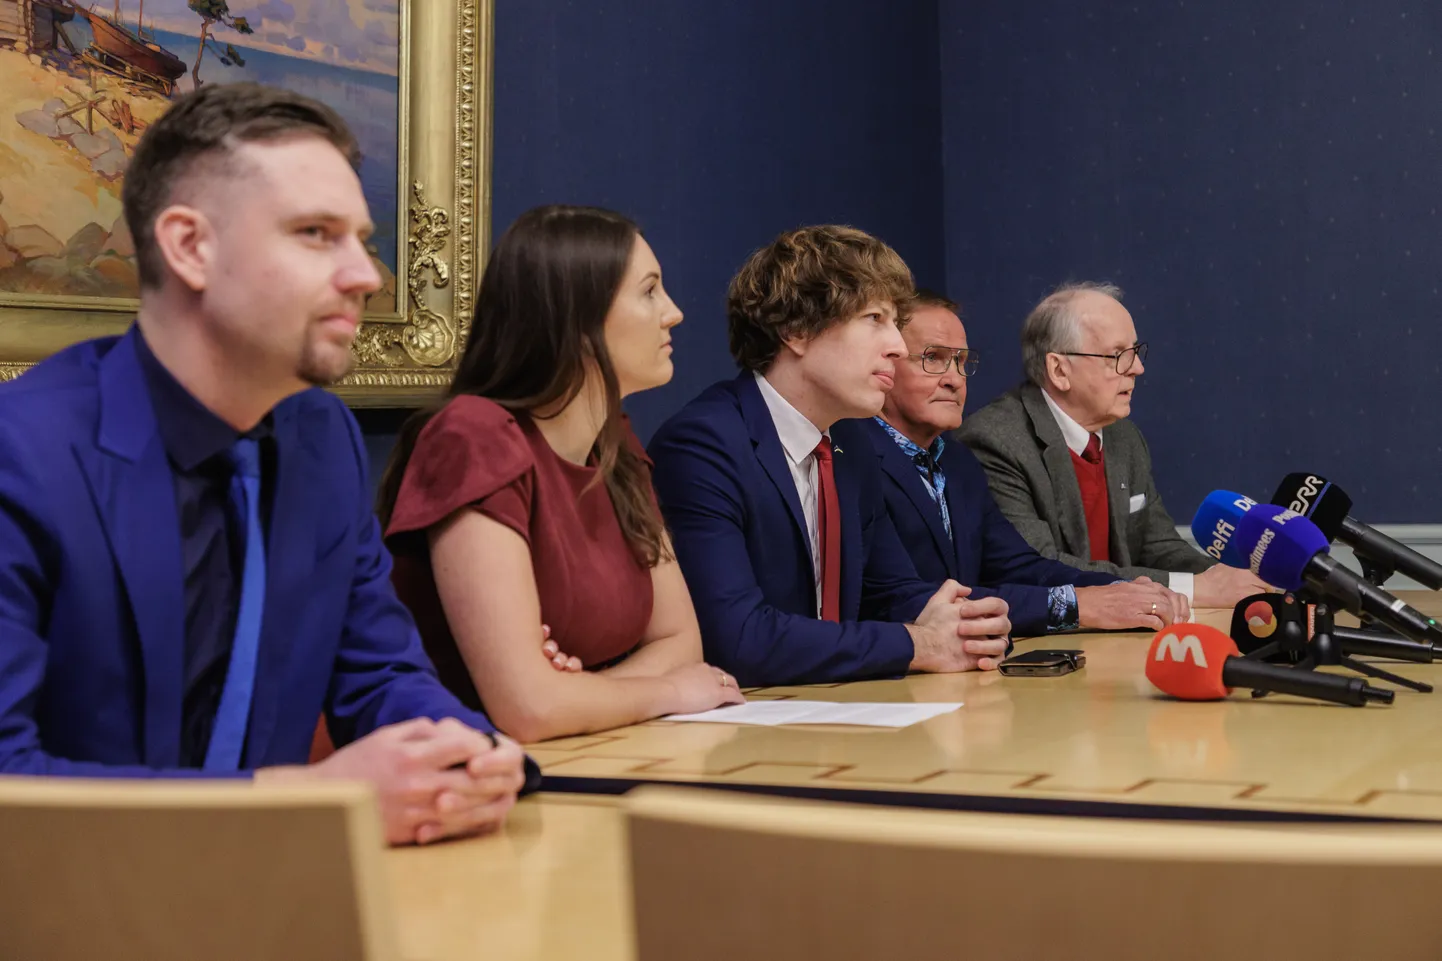 Riigikogu liikmed Andre Hanimägi, Ester Karuse, Tanel Kiik, Jaak Aab ja Enn Eesmaa teatasid reedel korraldatud pressikonverentsil oma lahkumisest Keskerakonnast.